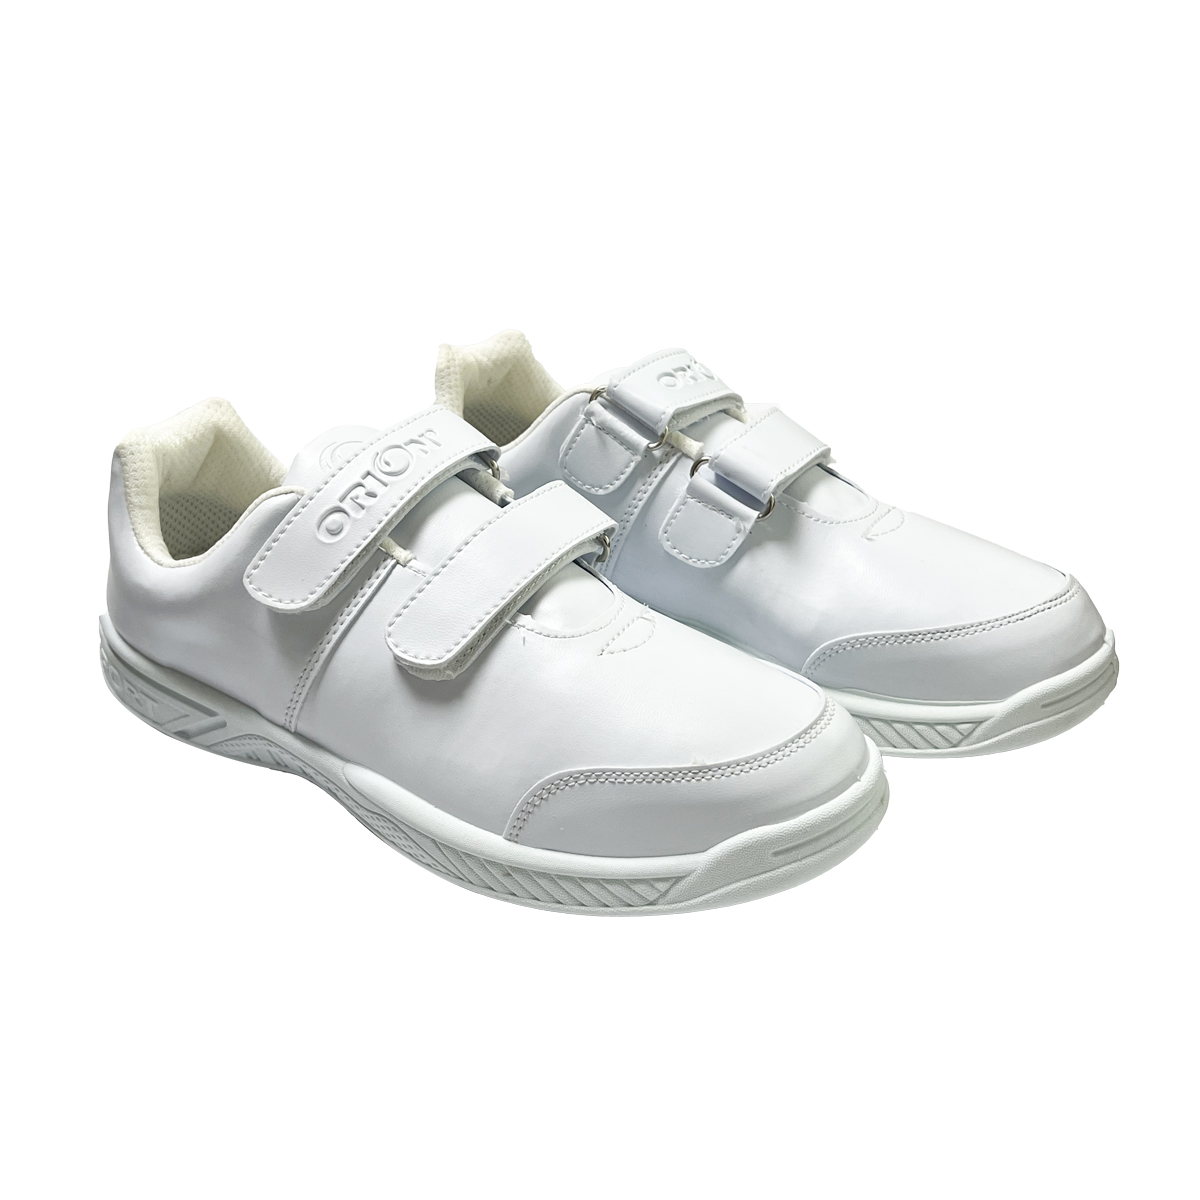 School Shoe (Size: 37-41)